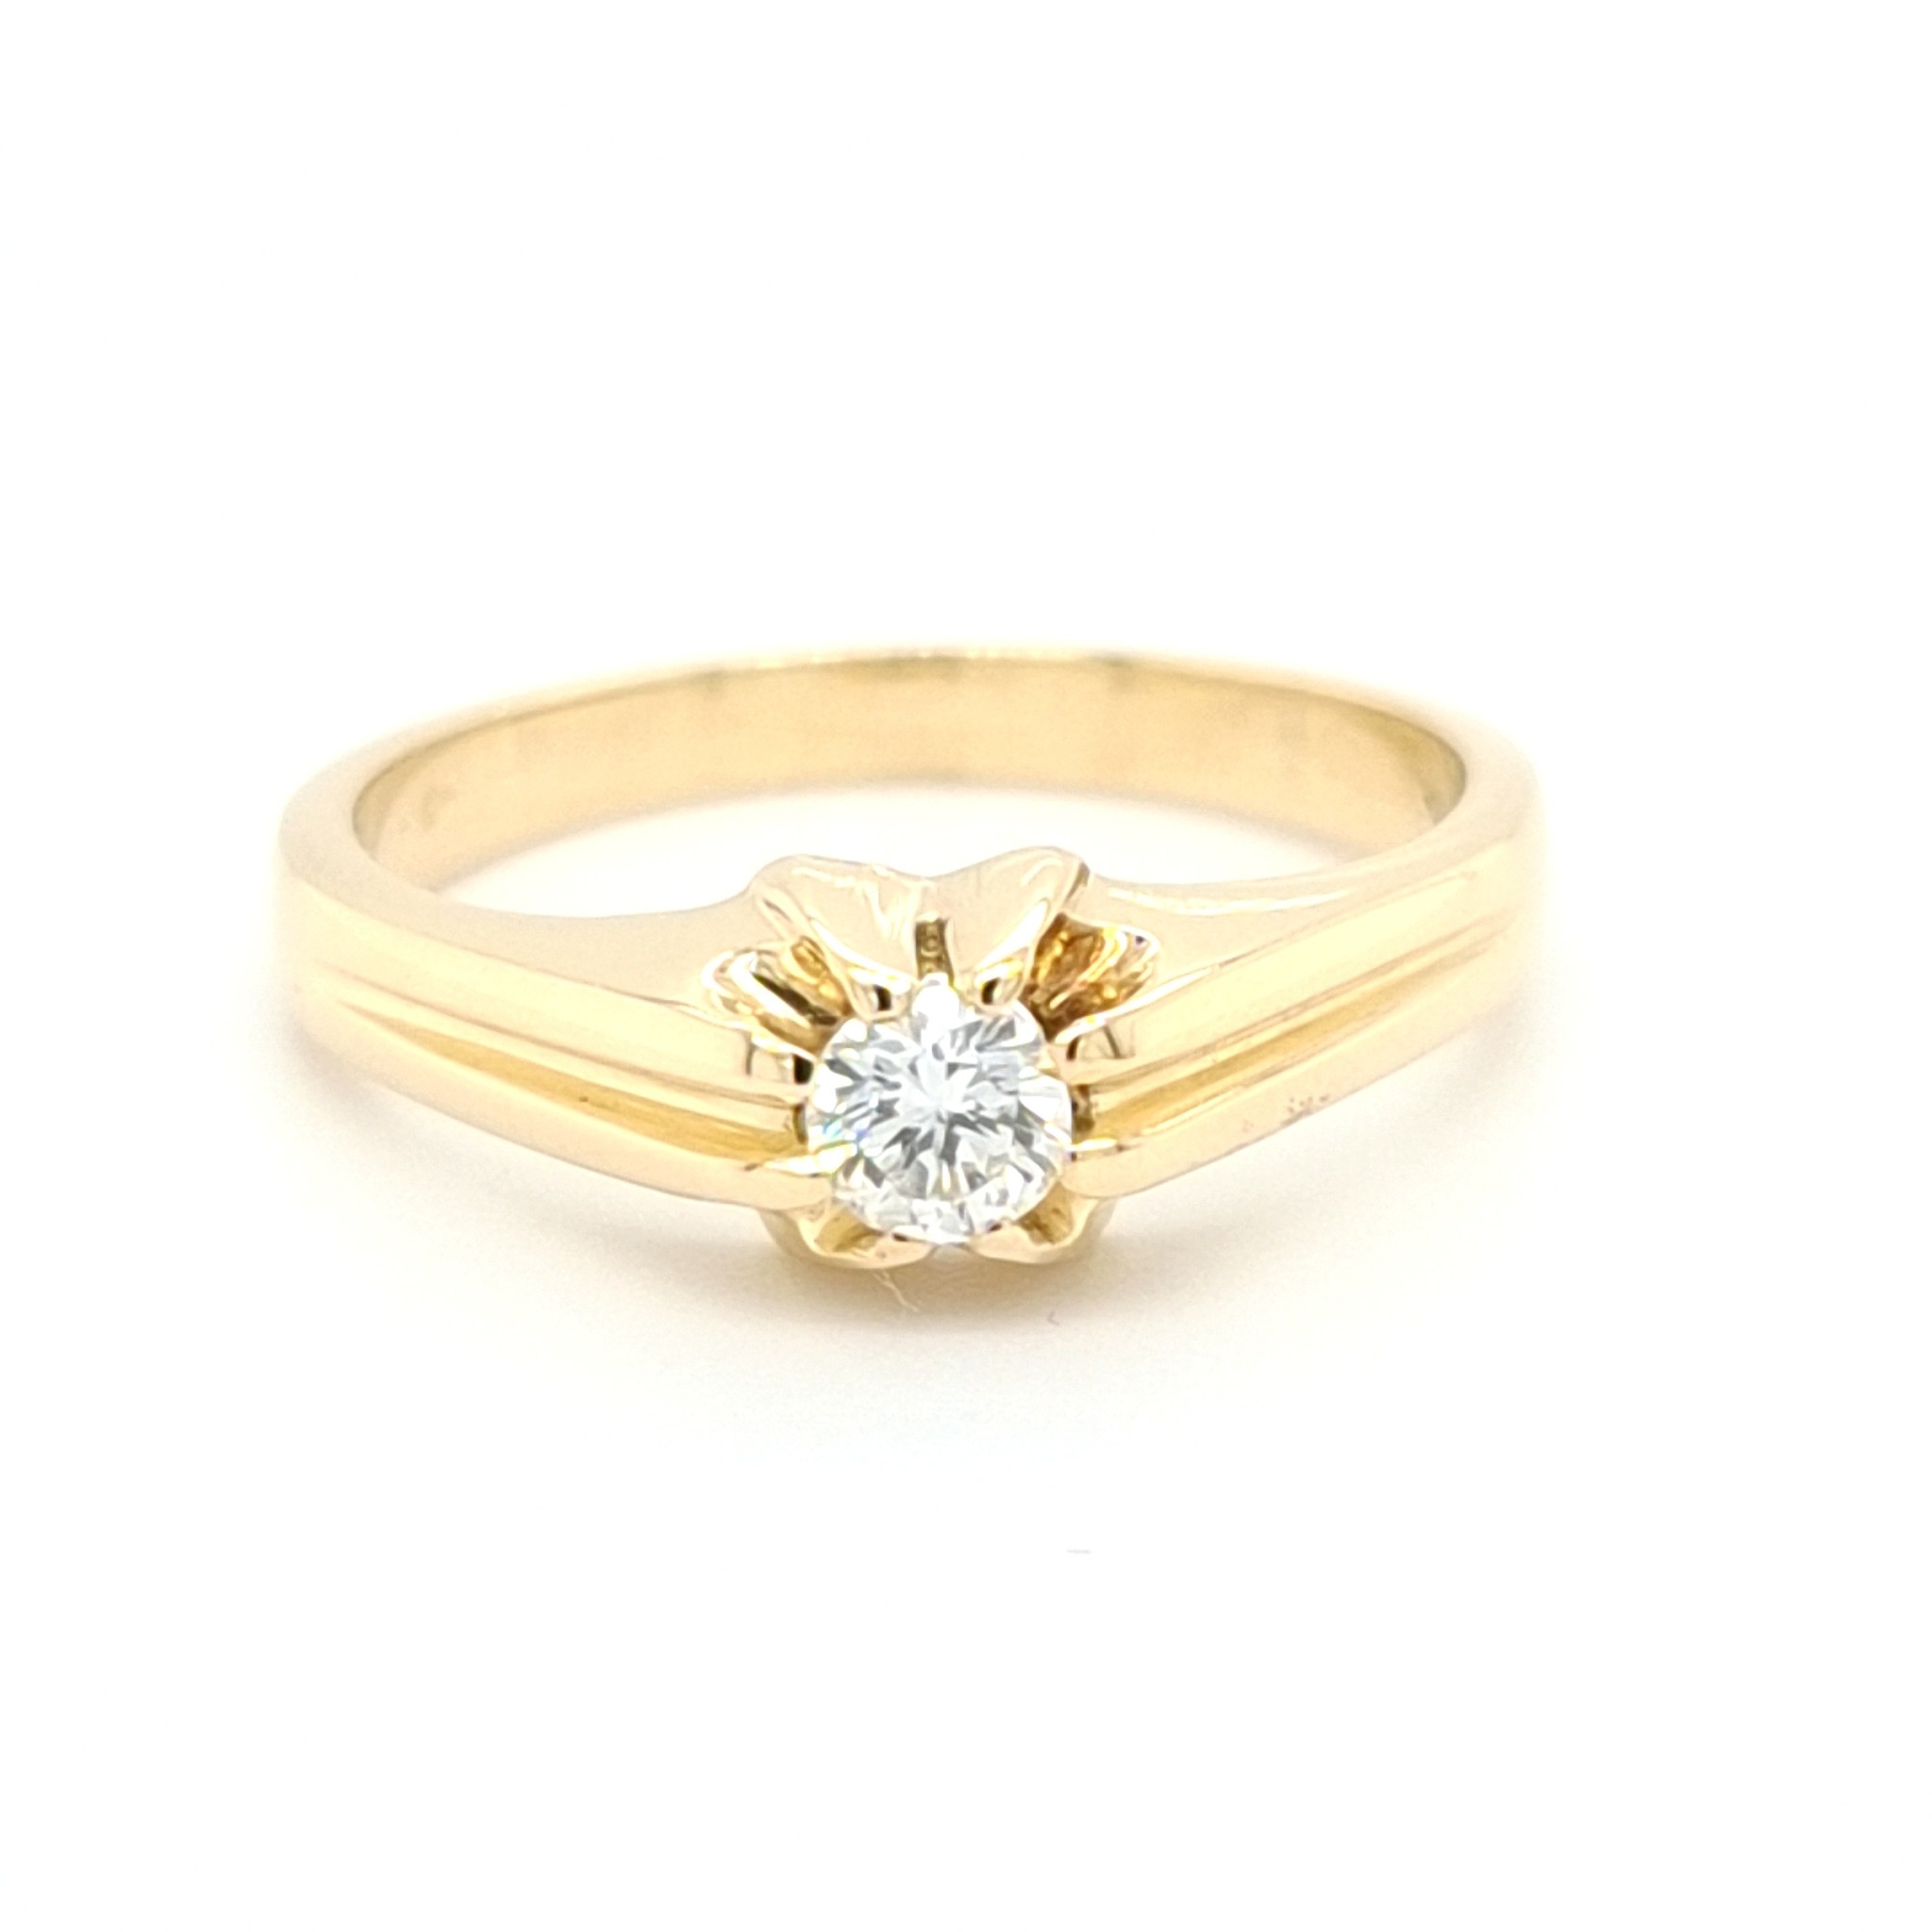 Onderzoek Magazijn Doen 14 Karaat geel gouden tiffany ringbriljant/5.1 gram - Inkoop & verkoop  goud, zilver, juwelen, horloges sinds 1946